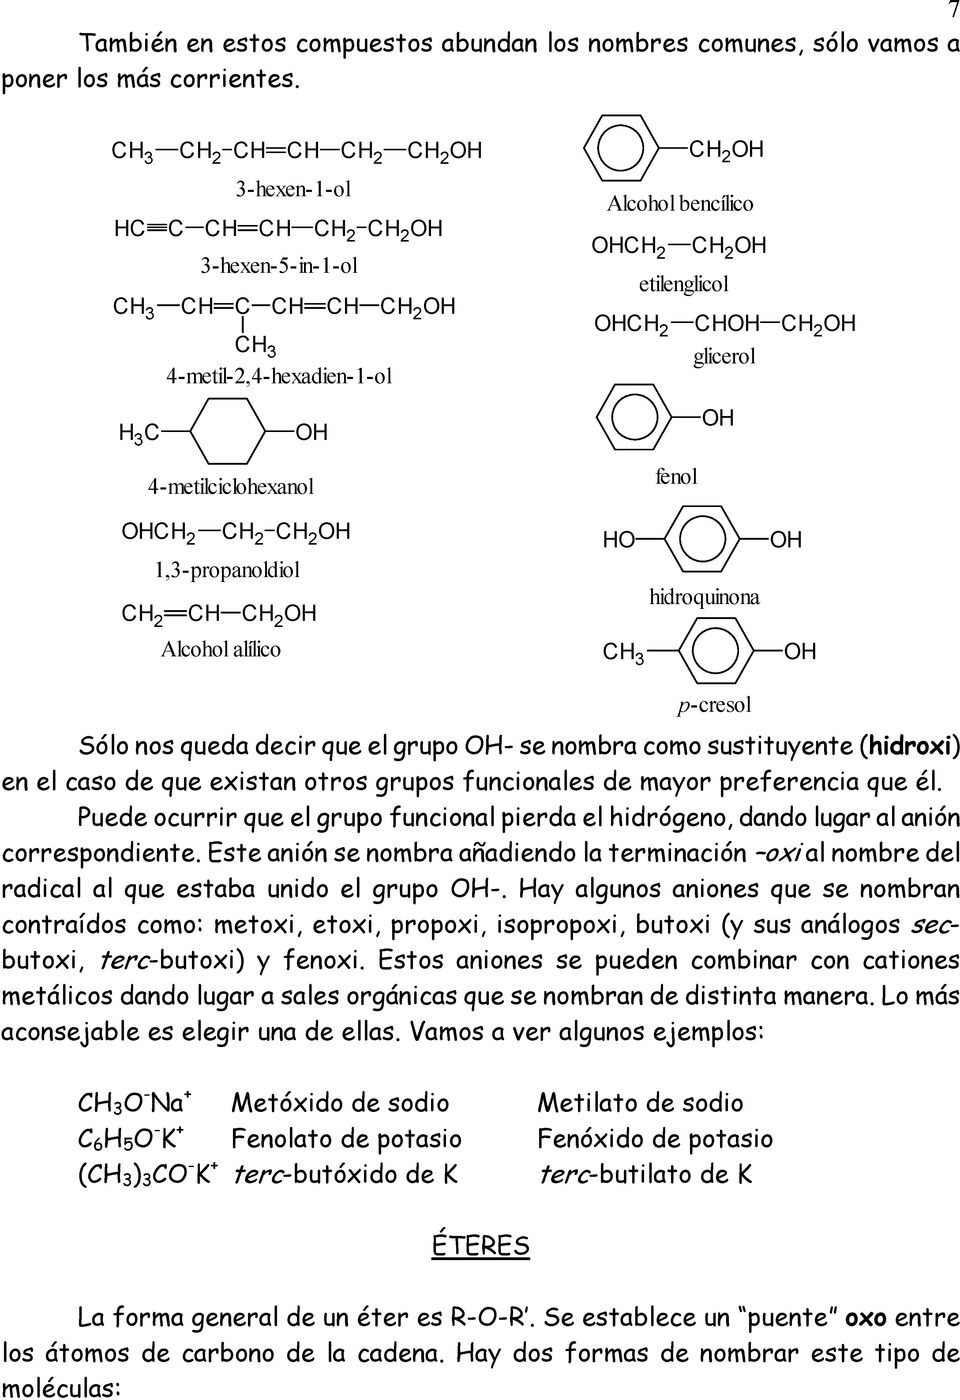 etilenglicol OHCH 2 CHOH CH 2 OH glicerol OH fenol OHCH 2 CH 2 CH 2 OH 1,3-propanoldiol CH 2 CH CH 2 OH Alcohol alílico HO hidroquinona OH OH Sólo nos queda decir que el grupo OH- se nombra como